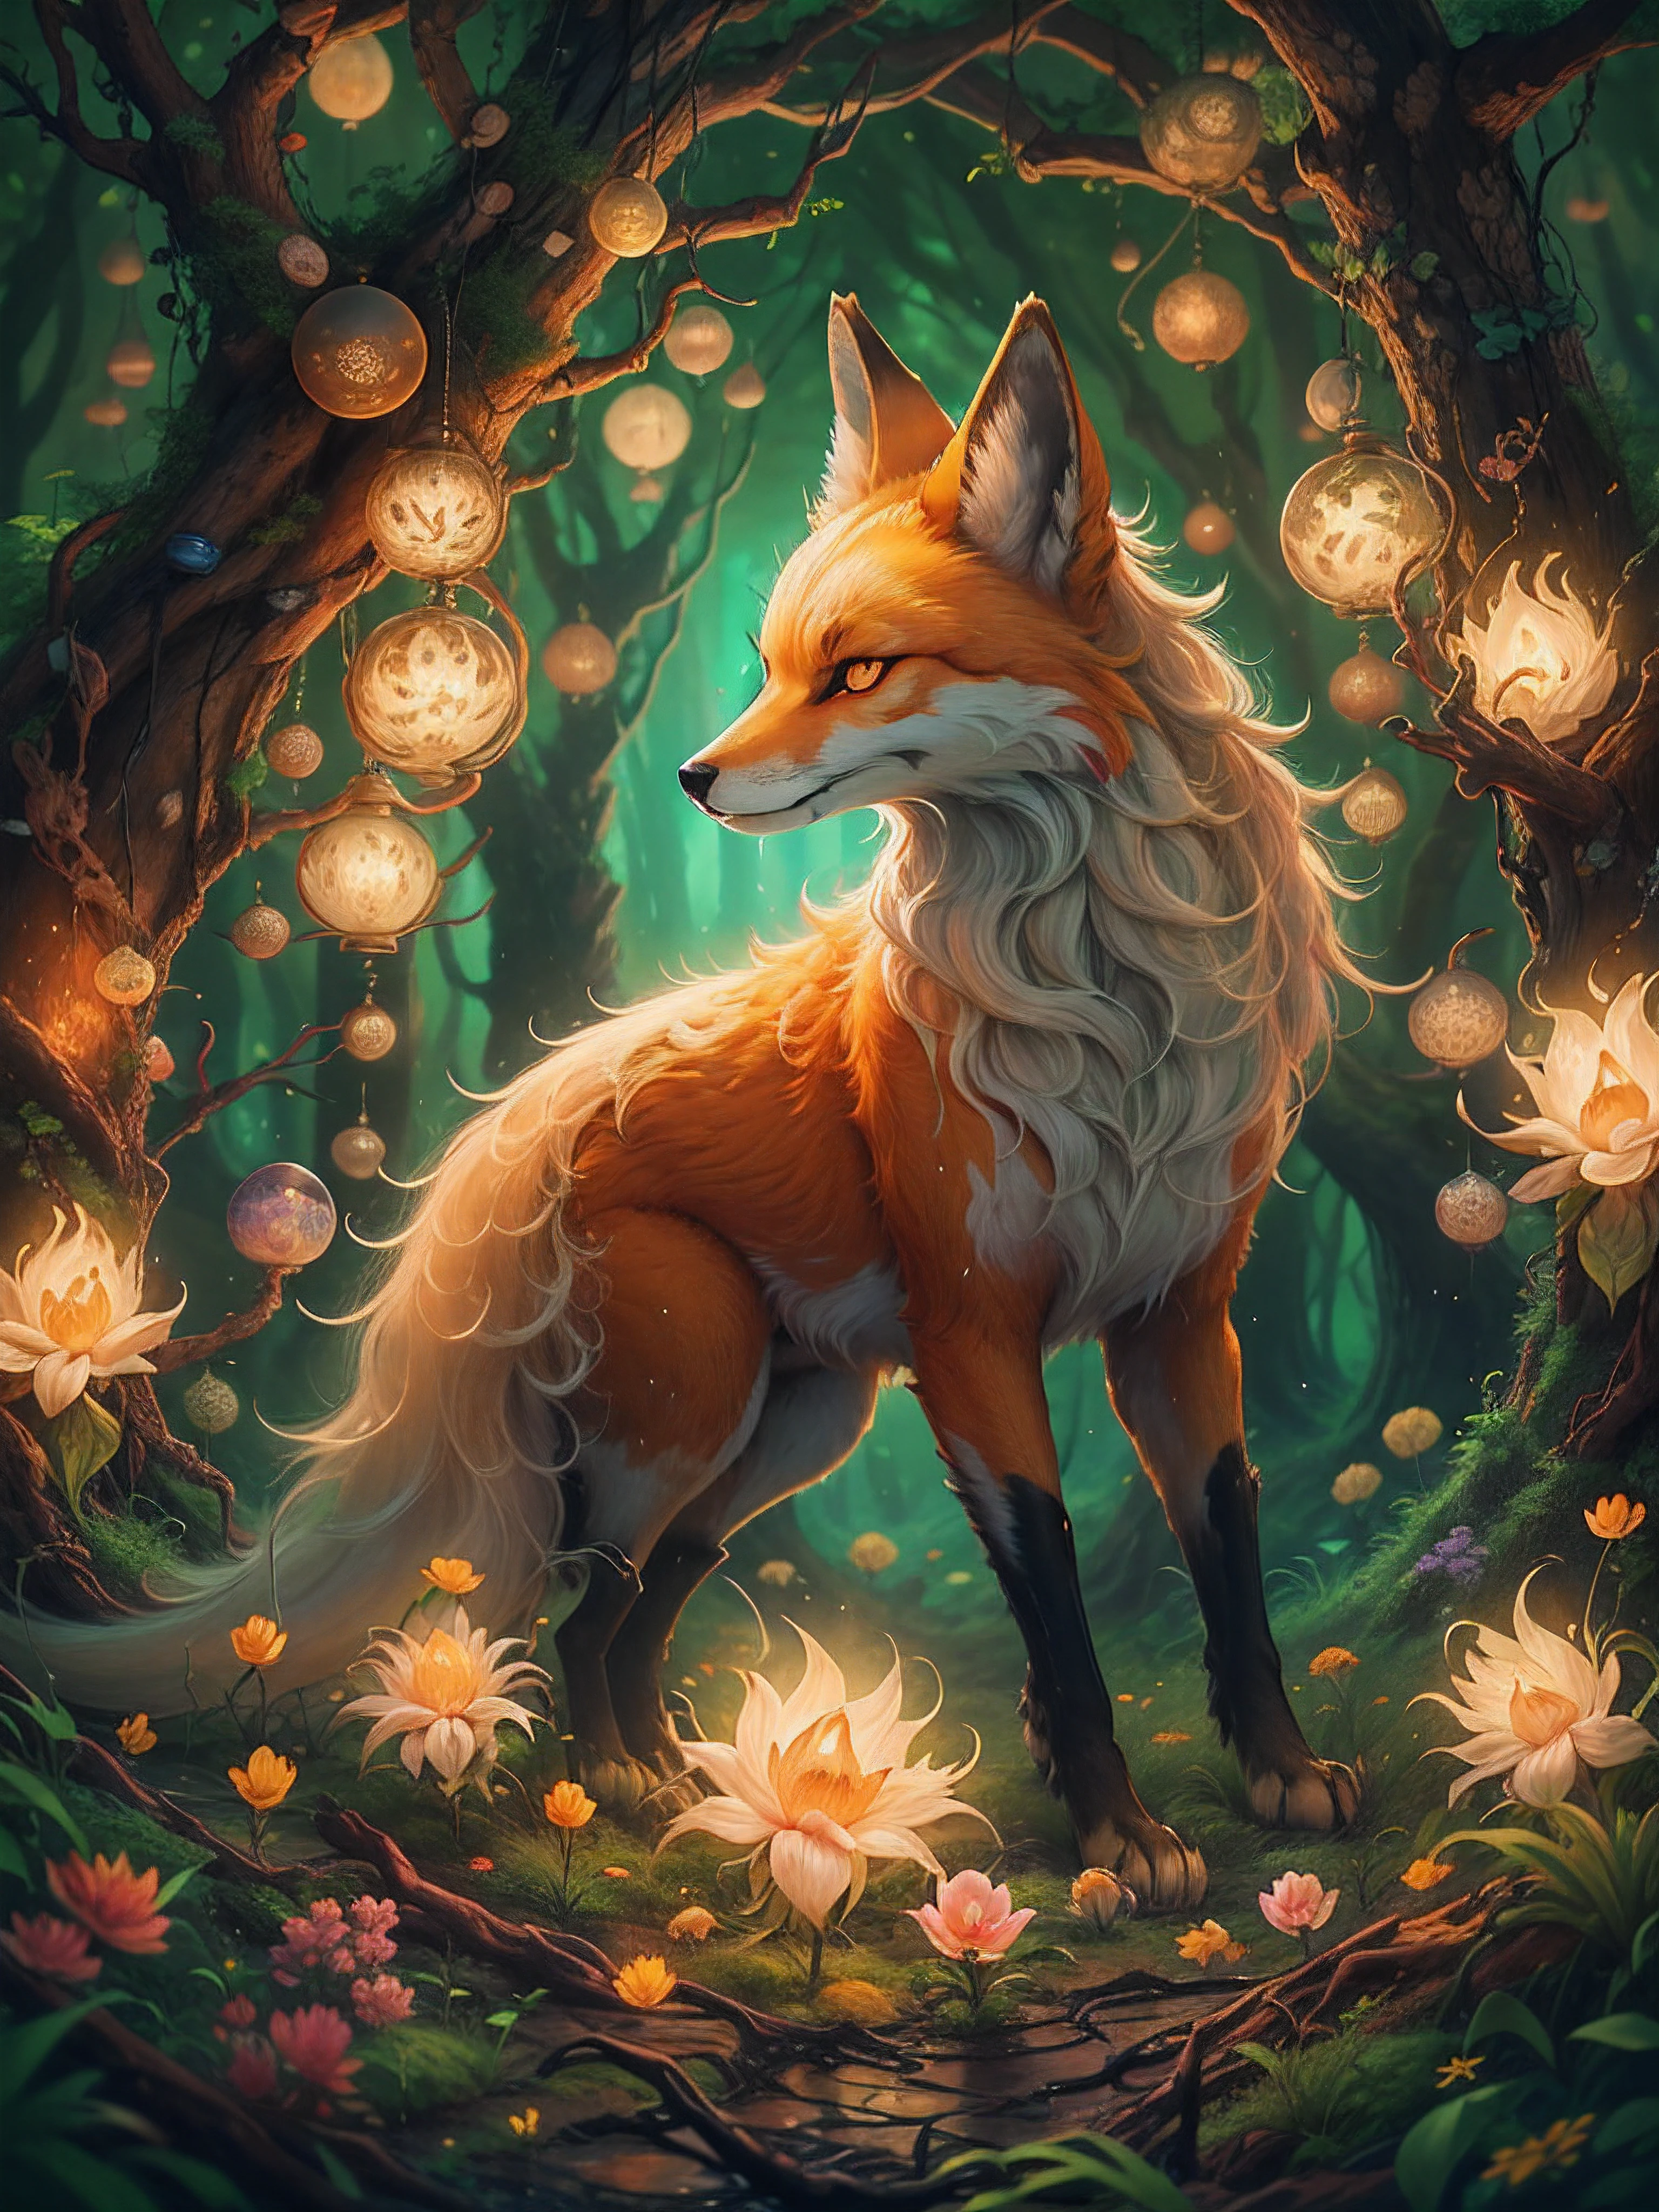 Ein wunderschönes digitales Gemälde eines neunschwänzigen Fuchses in einem mystischen Wald. Der Fuchs ist von leuchtenden Lichtkugeln umgeben und der Wald ist voller üppiger grüner Bäume und Blumen. Das Gemälde hat eine warme und einladende Atmosphäre.